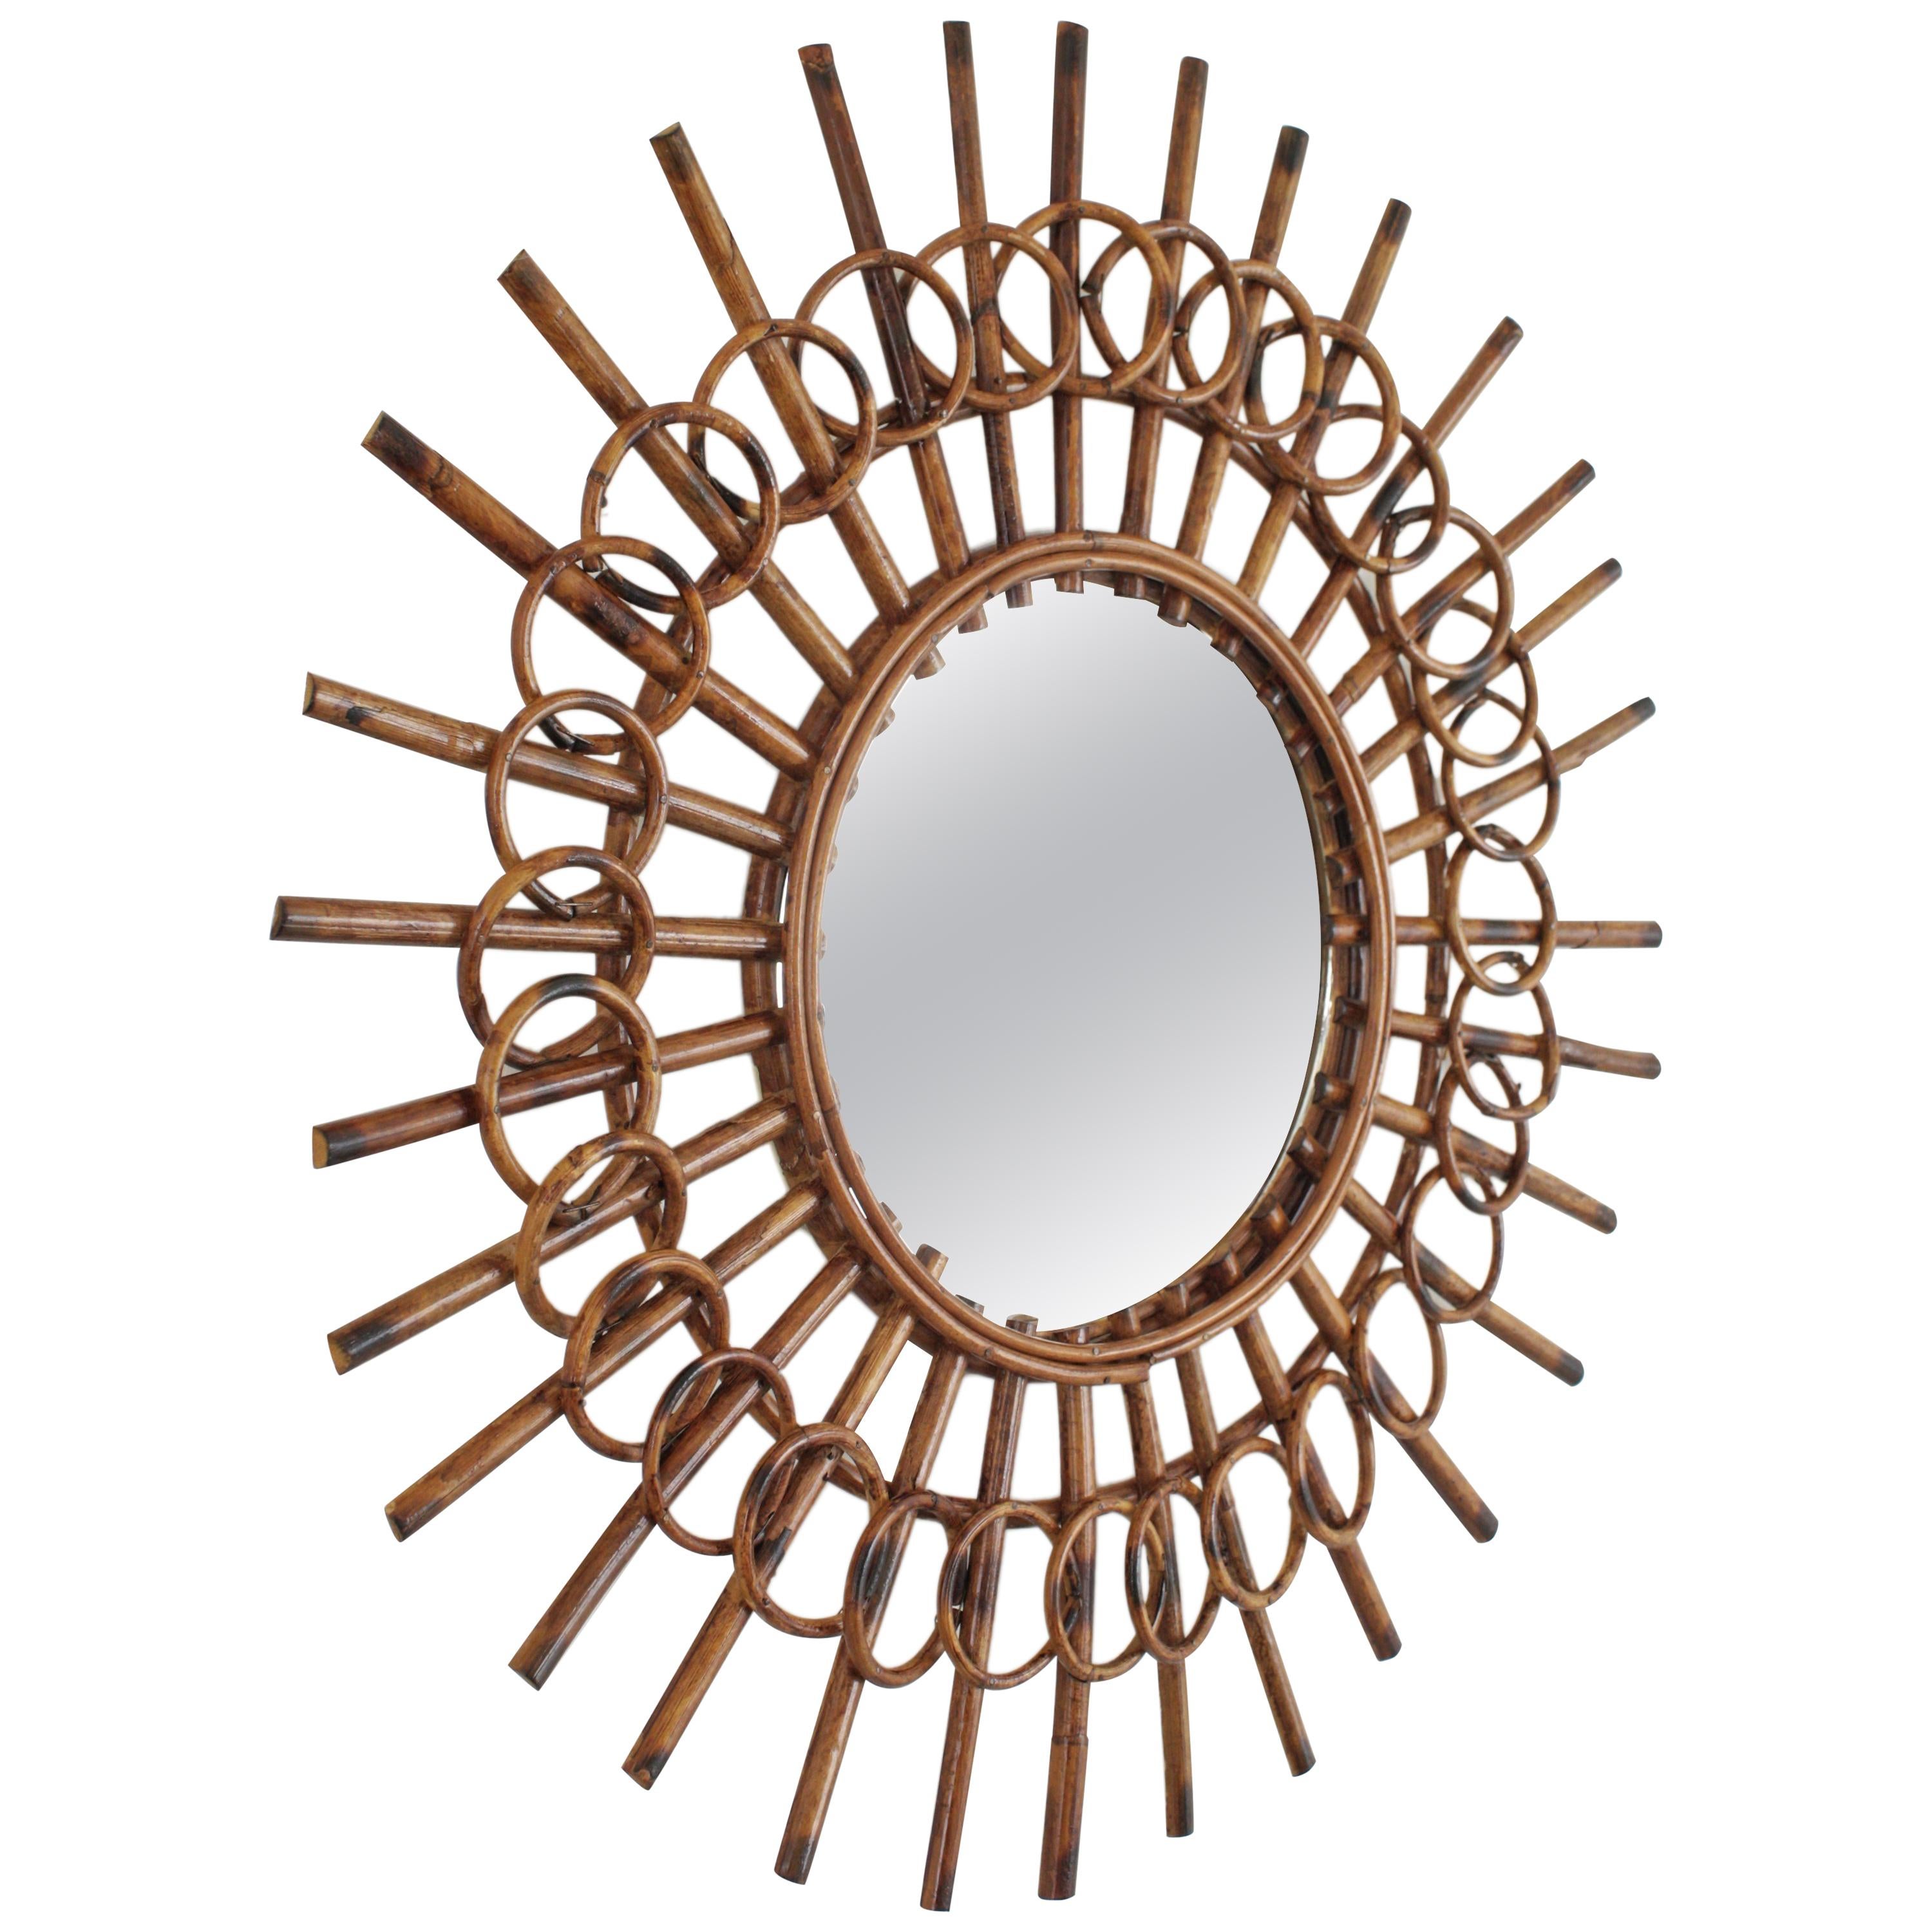 Un miroir en rotin très décoratif en forme de soleil encadré de cercles avec une belle couleur.
Ce miroir a le goût méditerranéen de la Côte d'Azur avec un beau travail artisanal inhabituel.
Charmant à placer seul ou dans une décoration murale avec